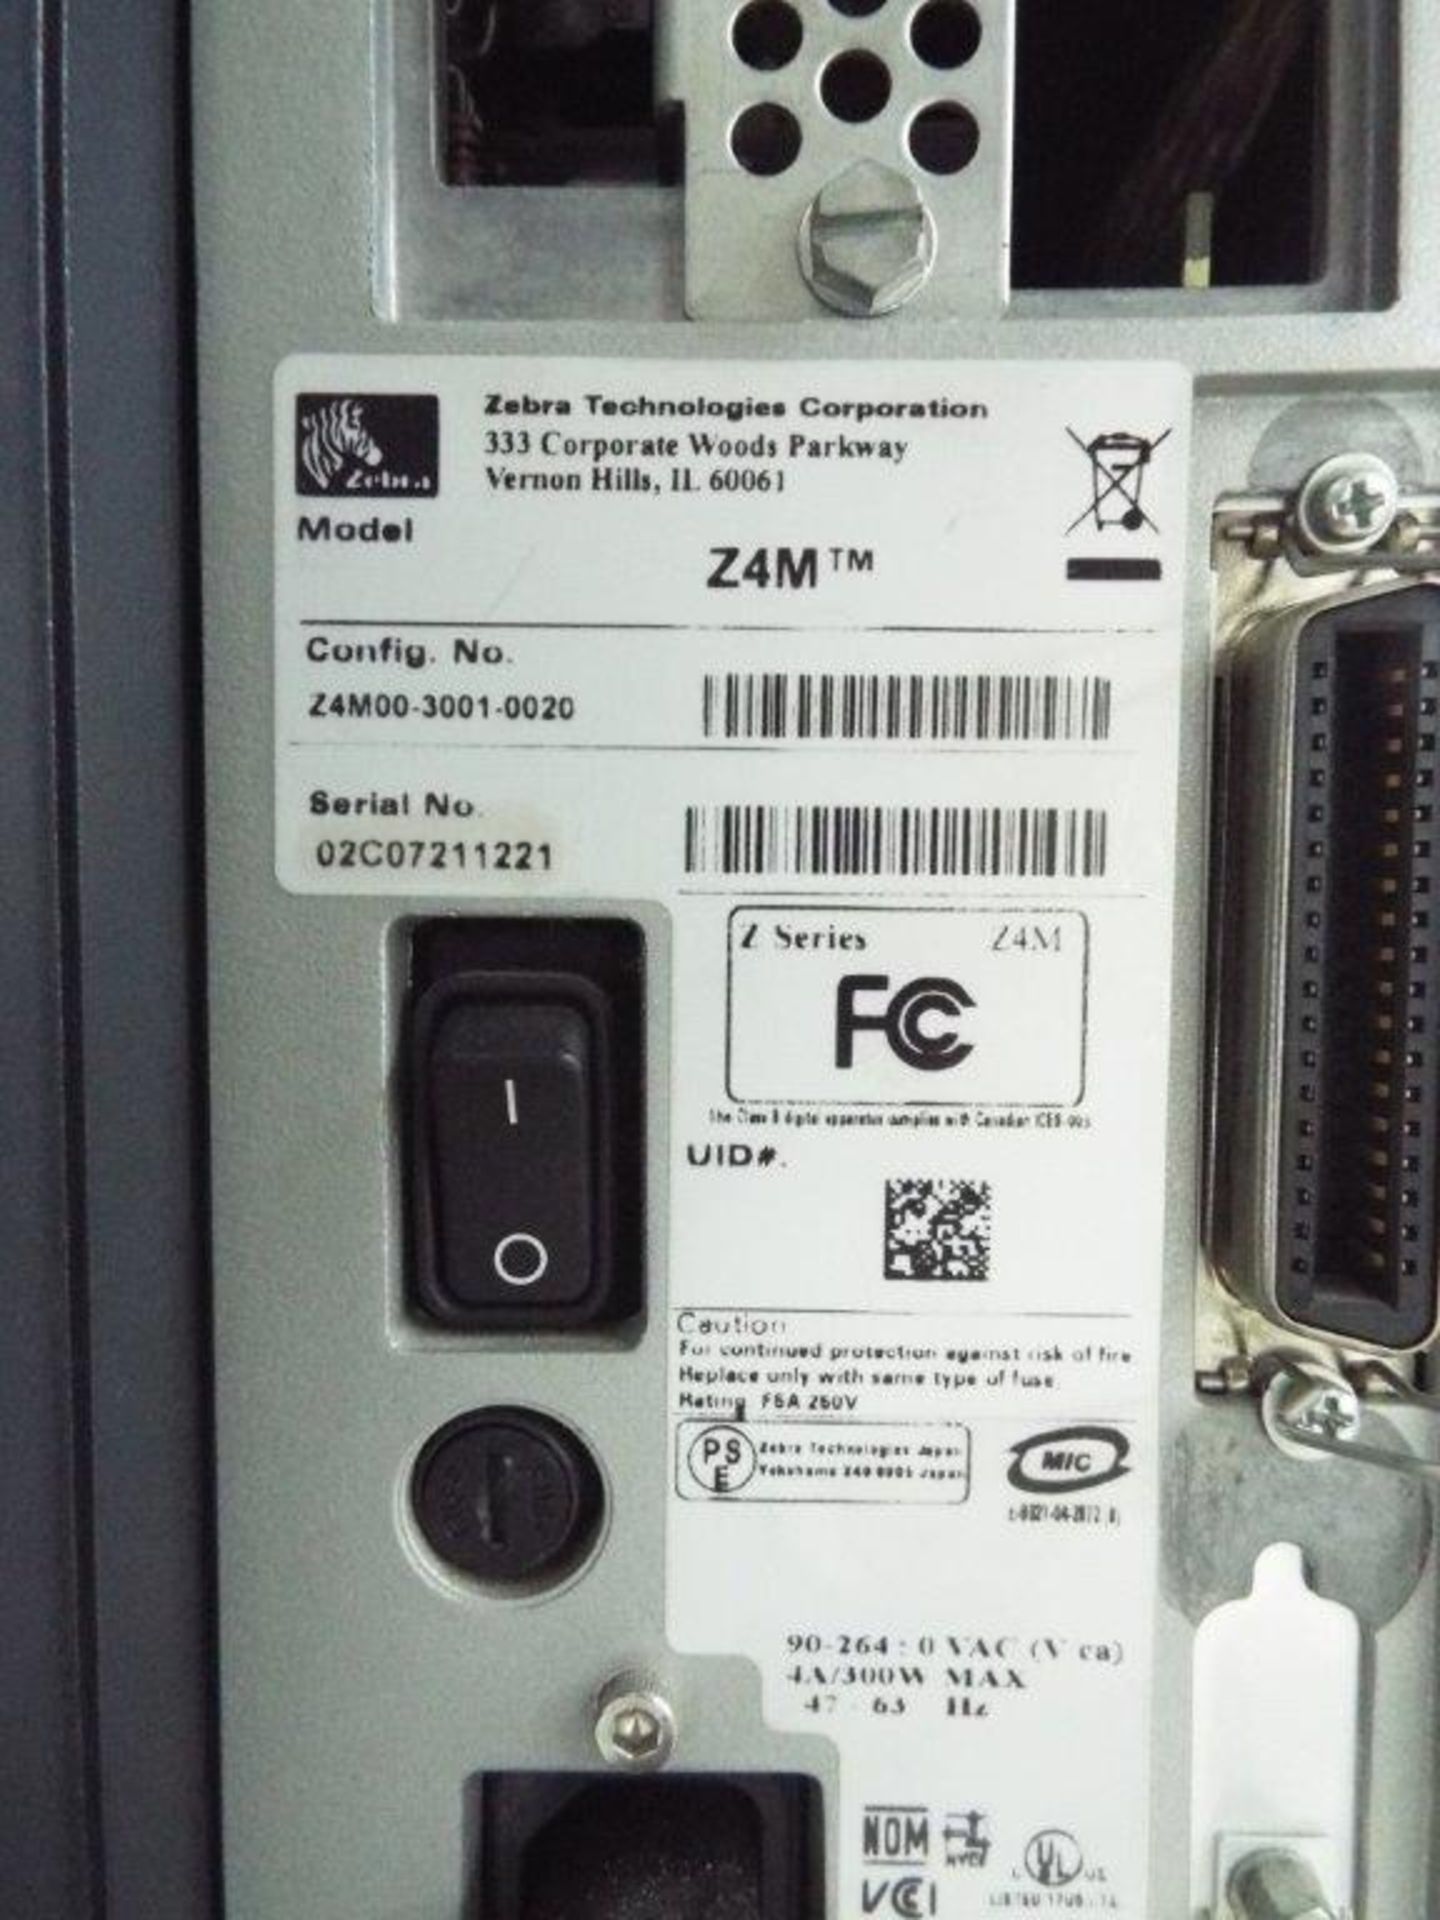 Zebra Z4M thermal printer - Image 2 of 2